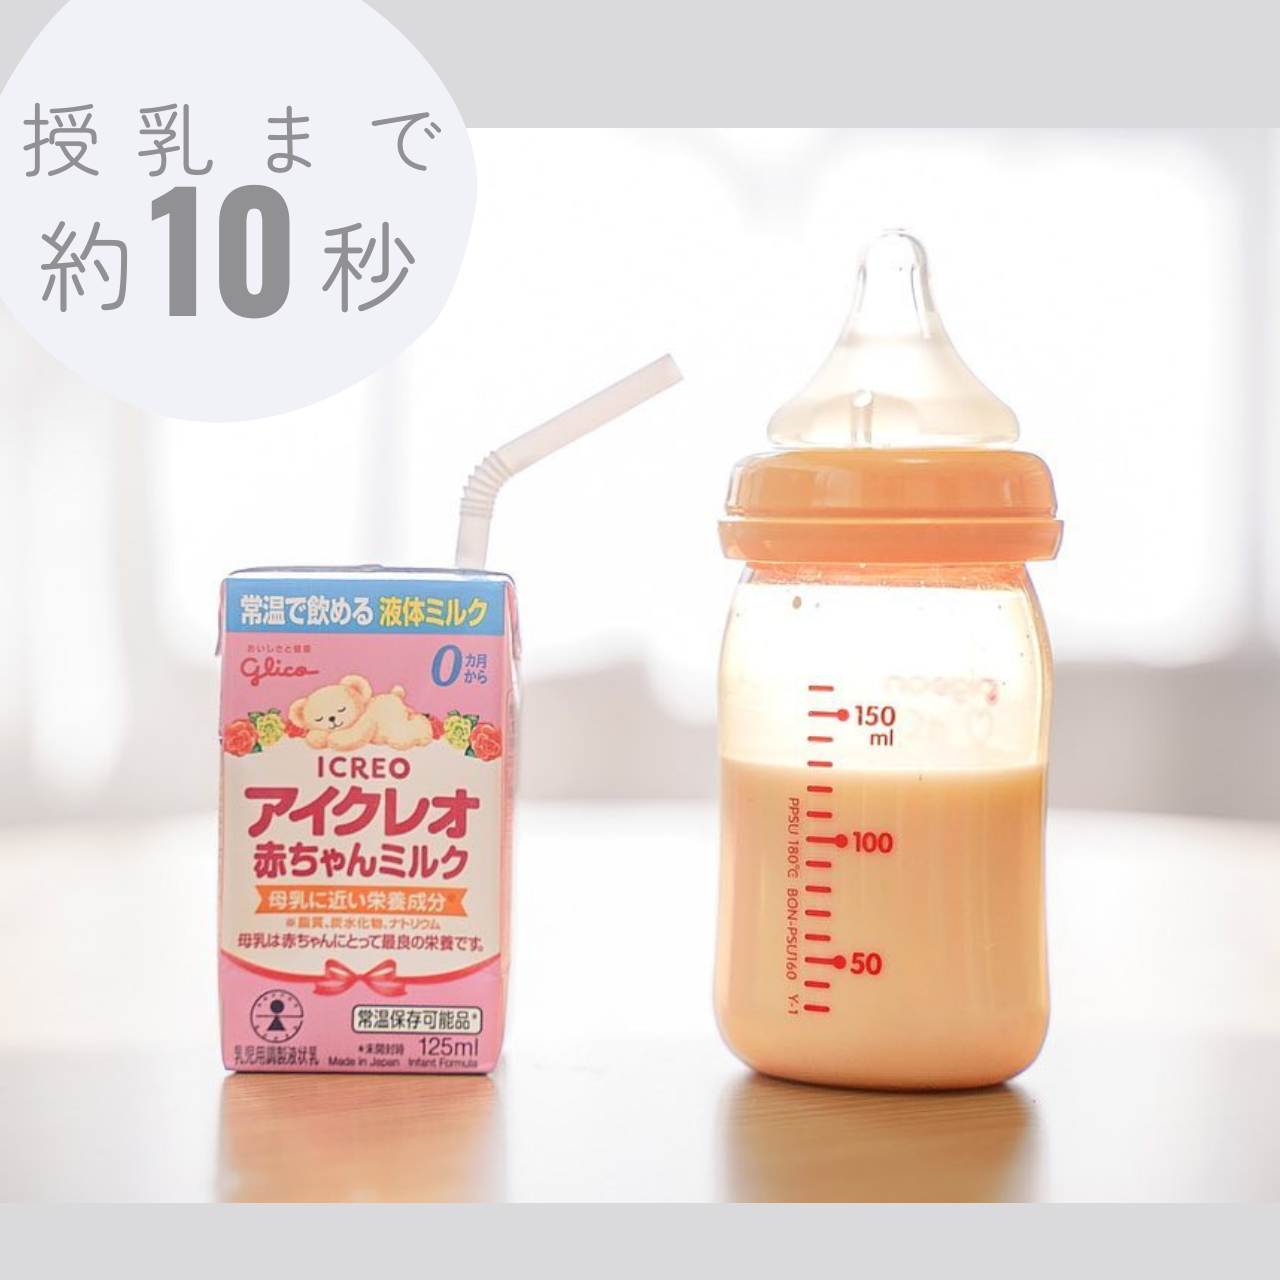 【お試し】バランスミルク800g 赤ちゃんミルク18本セット